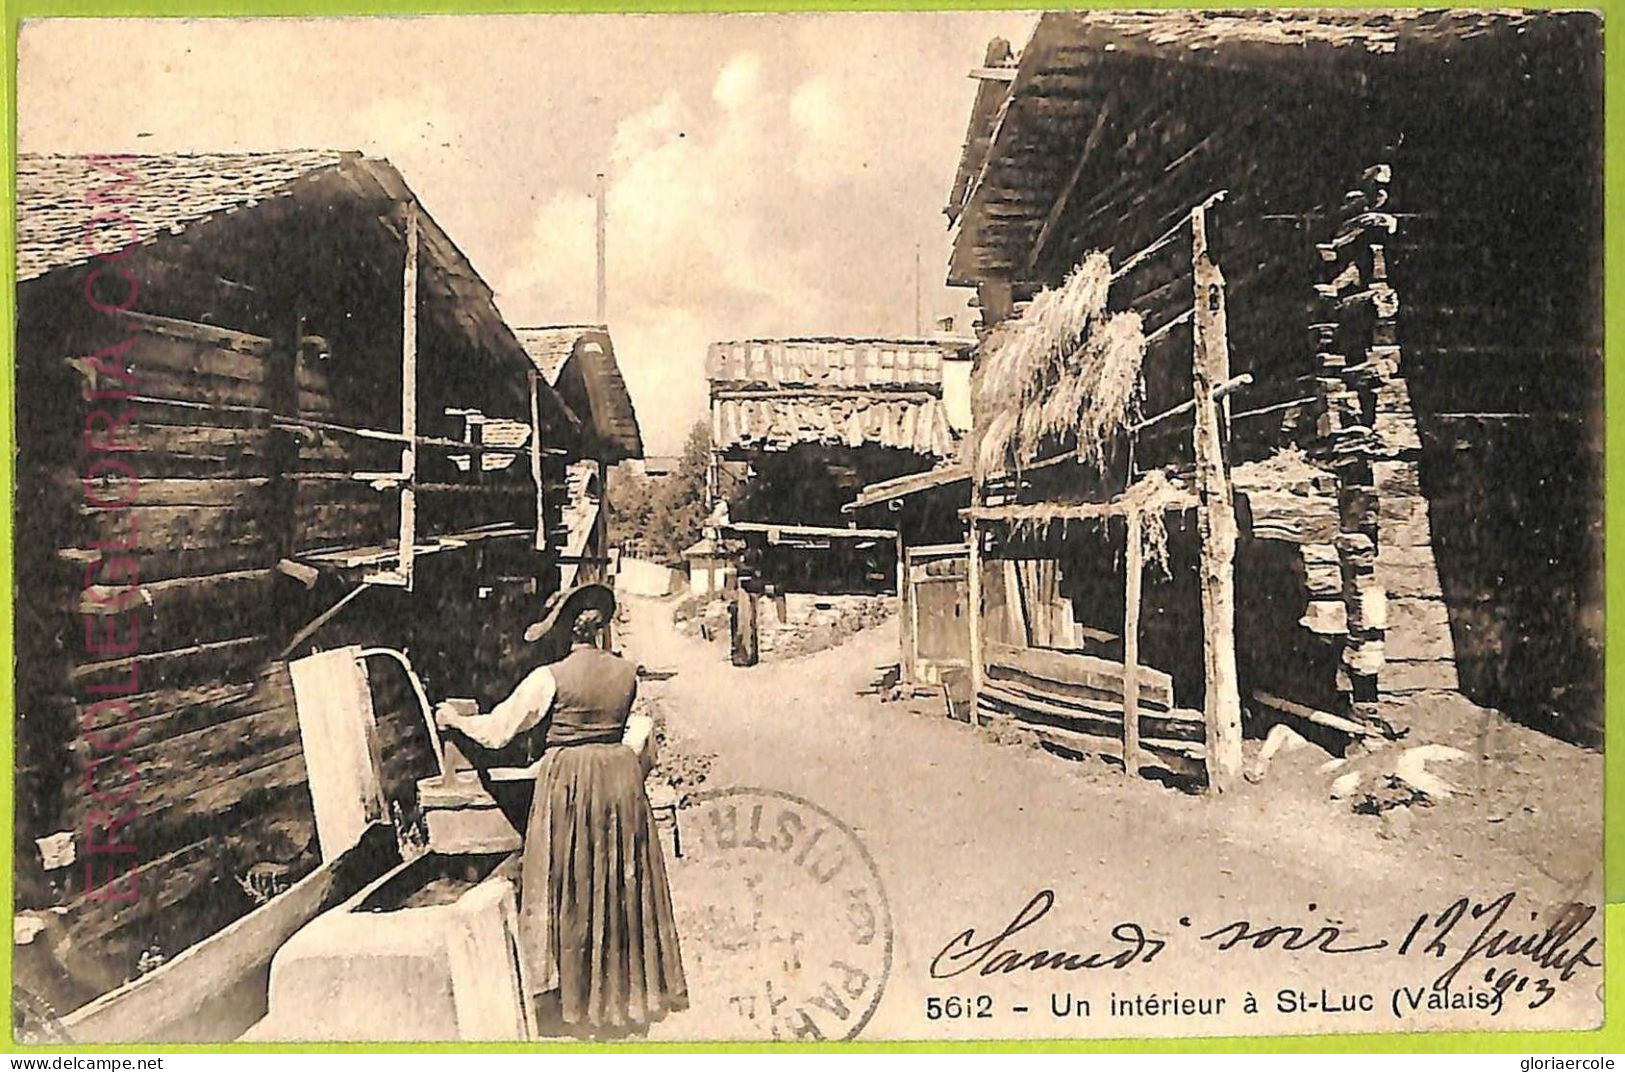 Ad5154 - SWITZERLAND Schweitz - Ansichtskarten VINTAGE POSTCARD - Saint-Luc-1913 - Saint-Luc